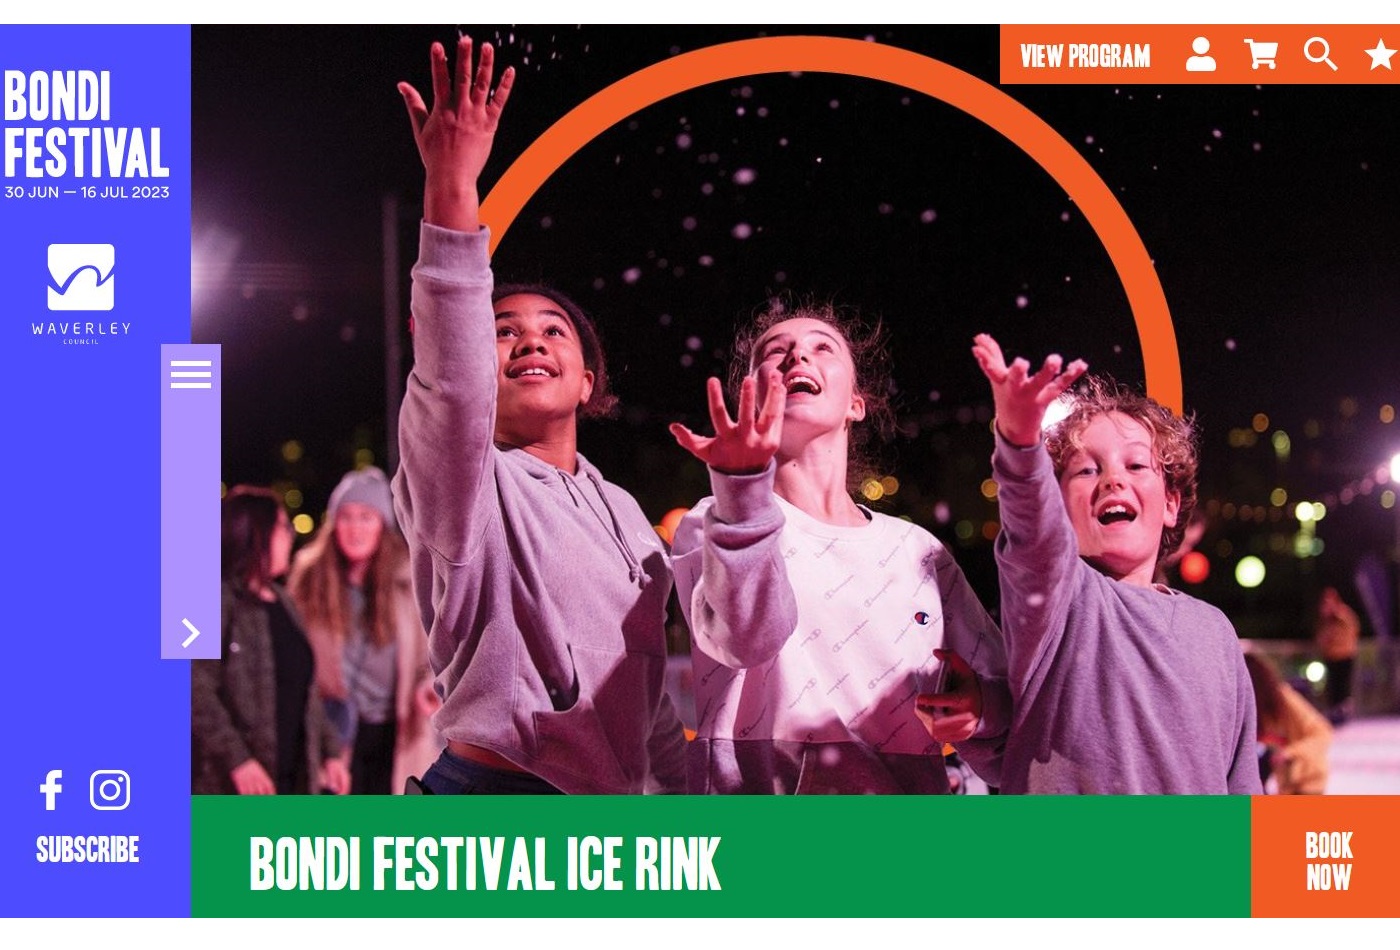 Bondi Festival Ice Rink